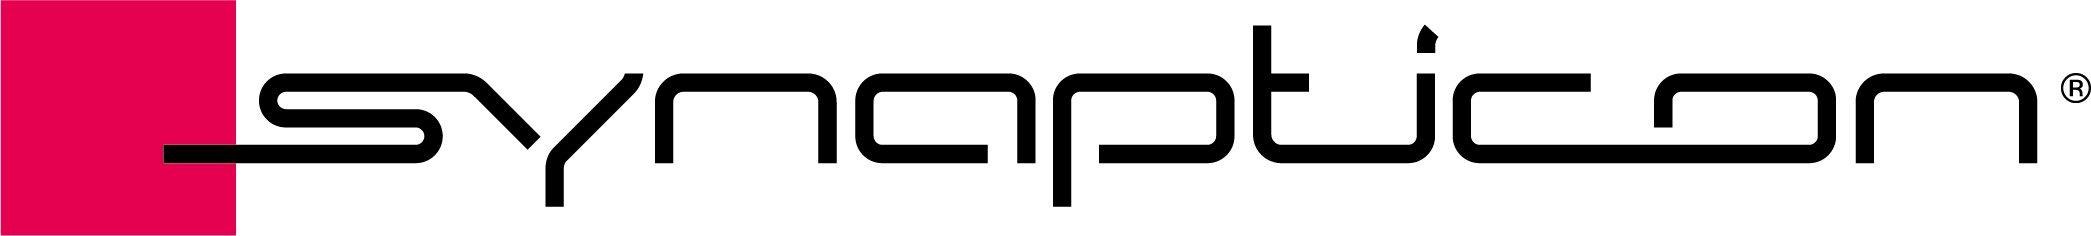 Synapticon logo